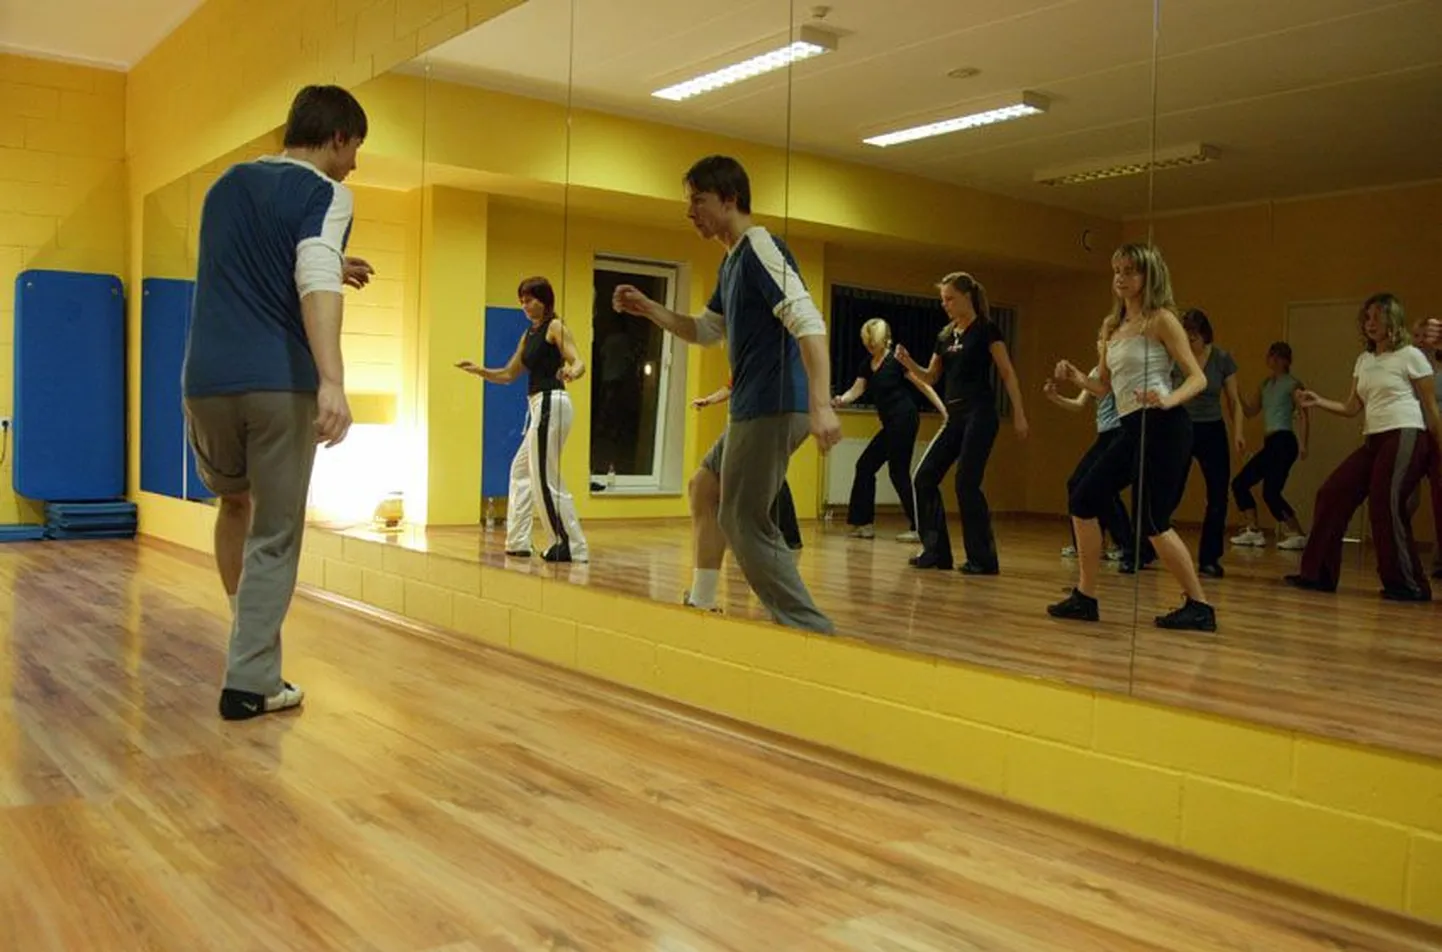 Tallinnast tulnud külalistreener Endro Roosimäe õpetab LNT SPORT aerobikasaalis rakverlannadele tantsulise aeroobika stiile - hip-hoppi ja funky’t.